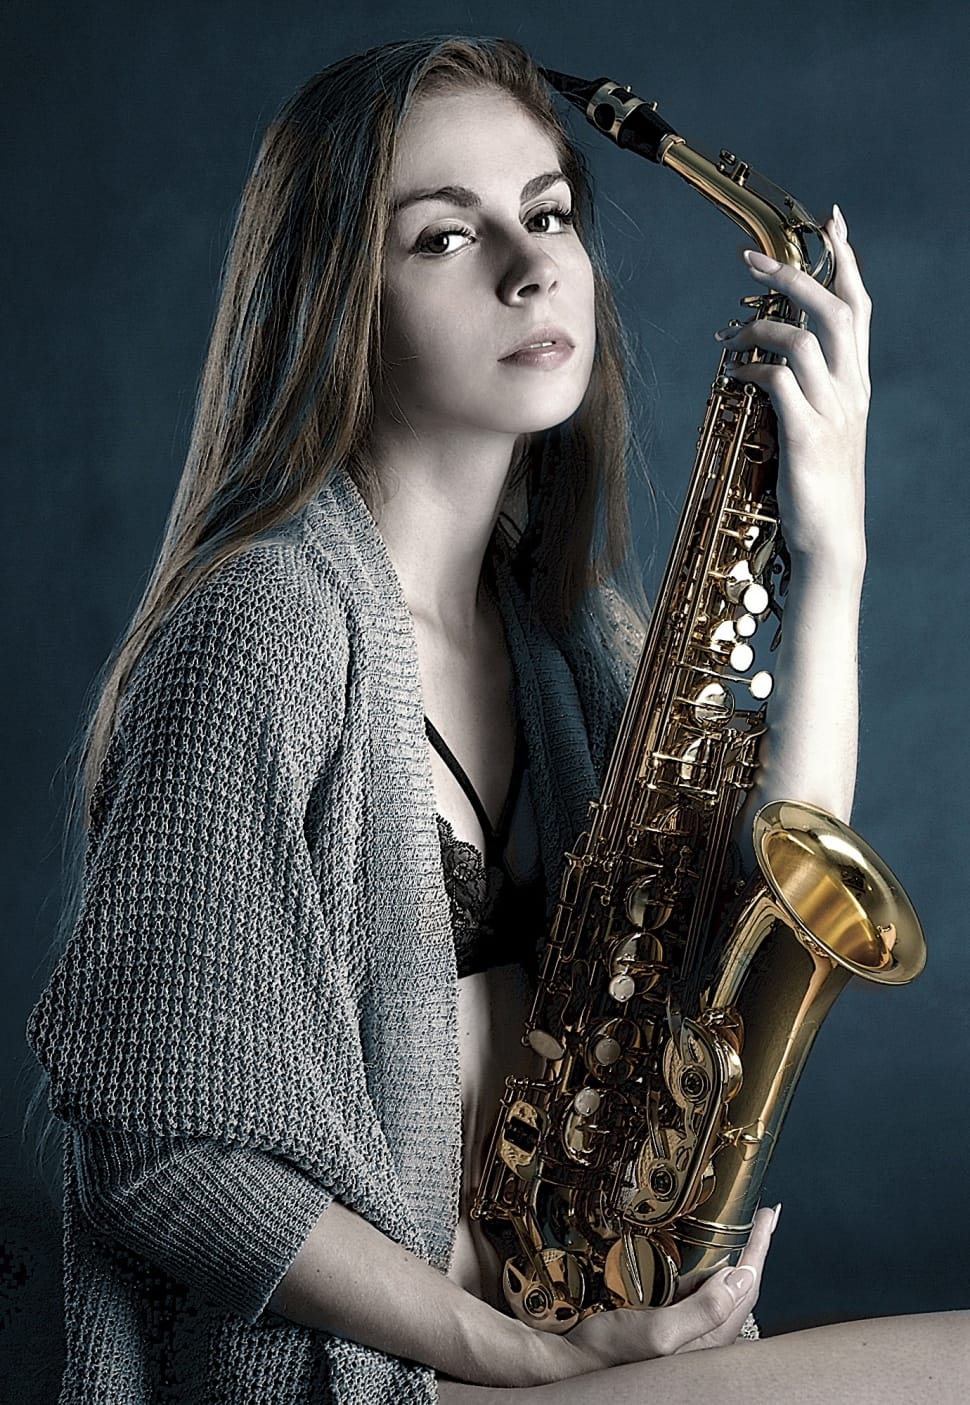 Brass Alto Saxophone Preview - Saxophone Girl - HD Wallpaper 